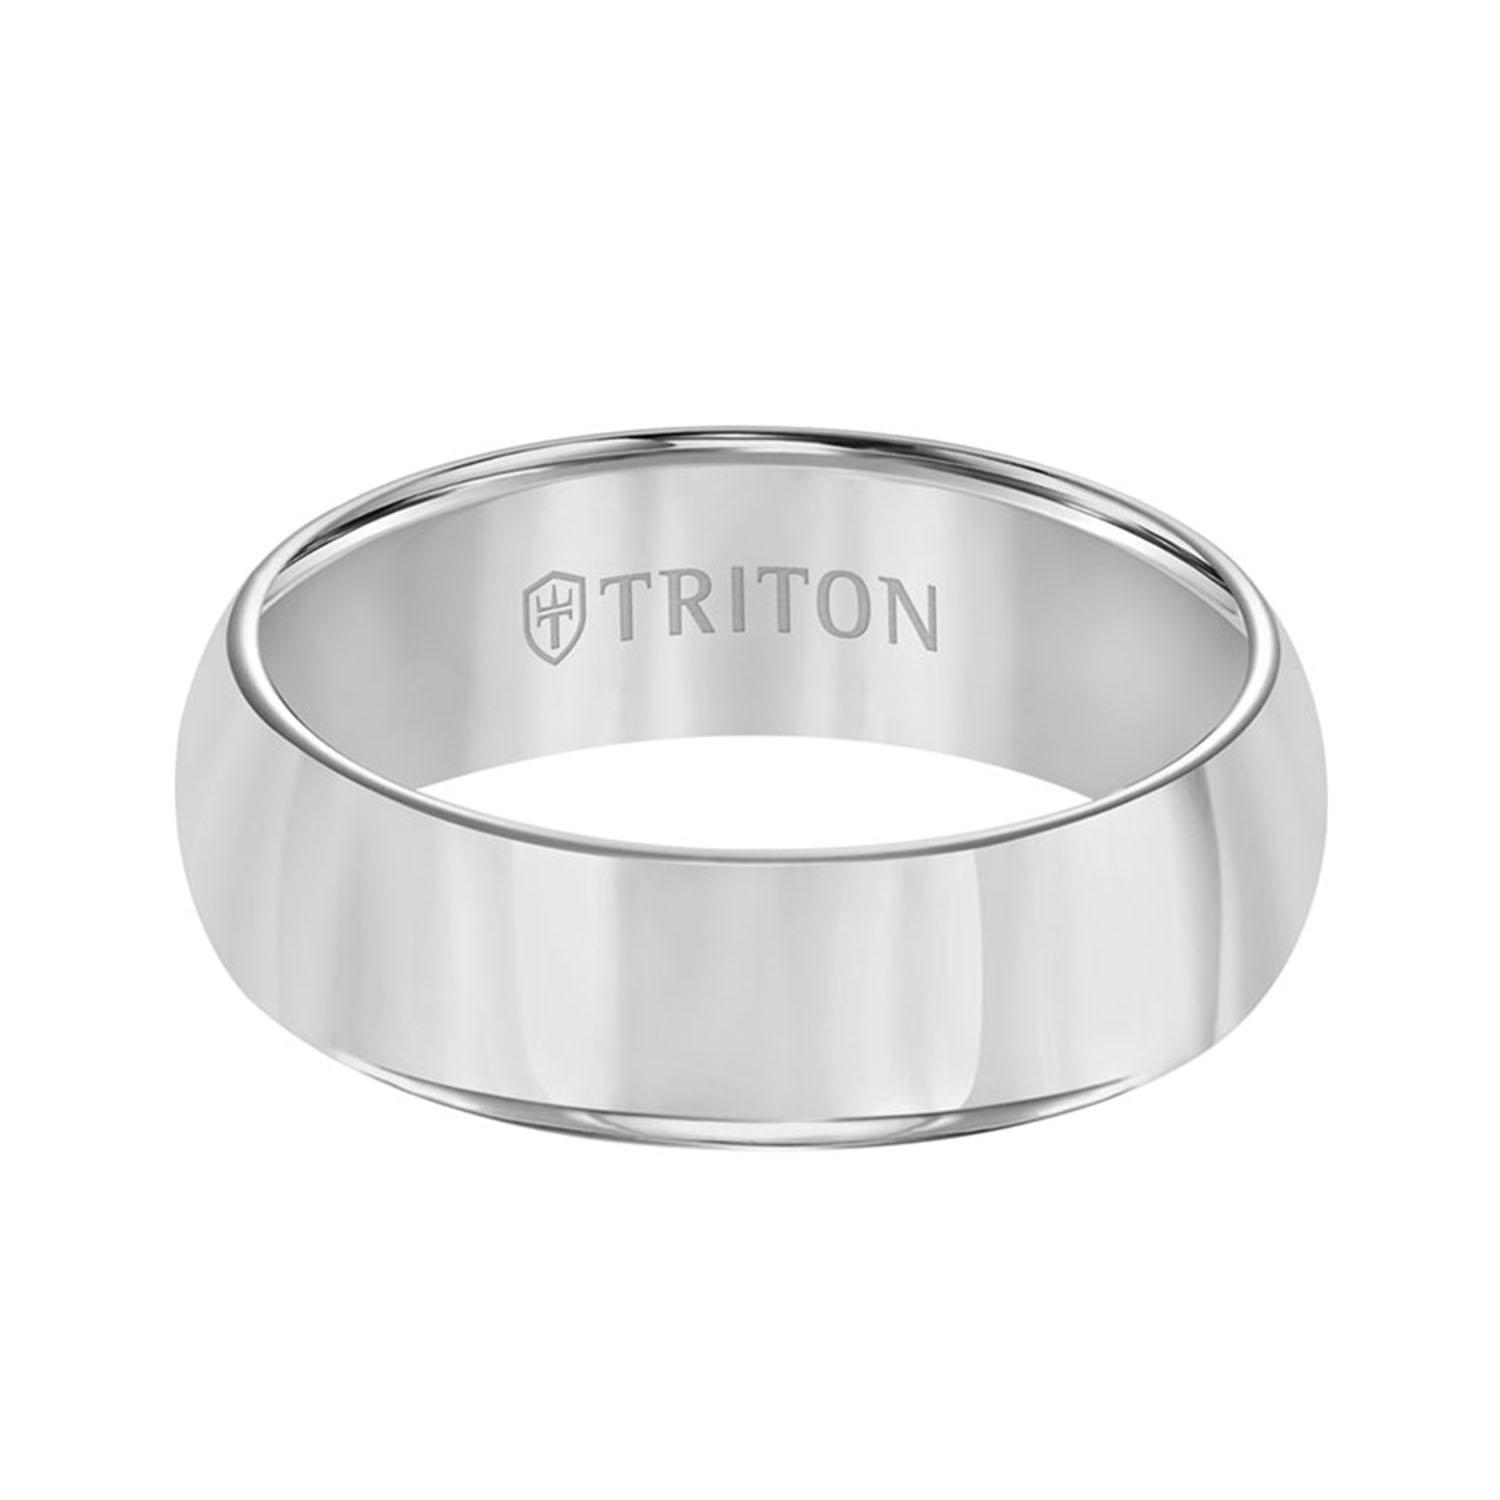 Triton 7mm Tungsten Band With Bright Polish